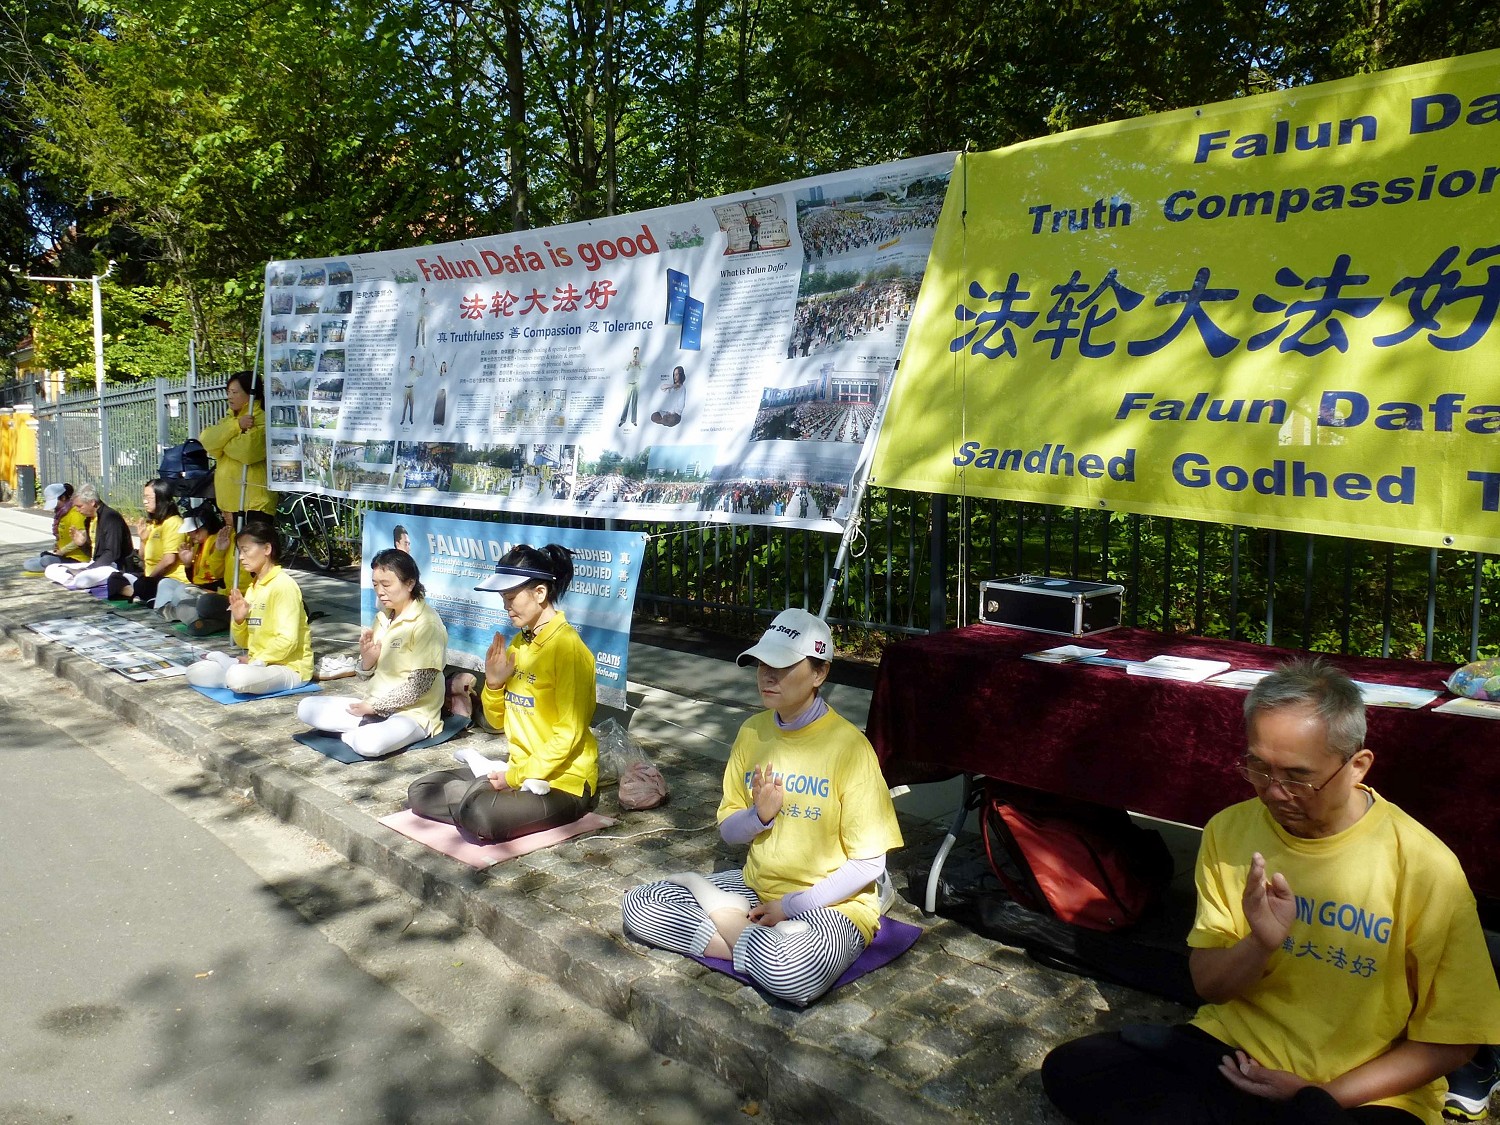 Image for article Danemark : À l’occasion de la Journée mondiale du Falun Dafa, les habitants de la région apportent leur soutien pour mettre fin à la persécution